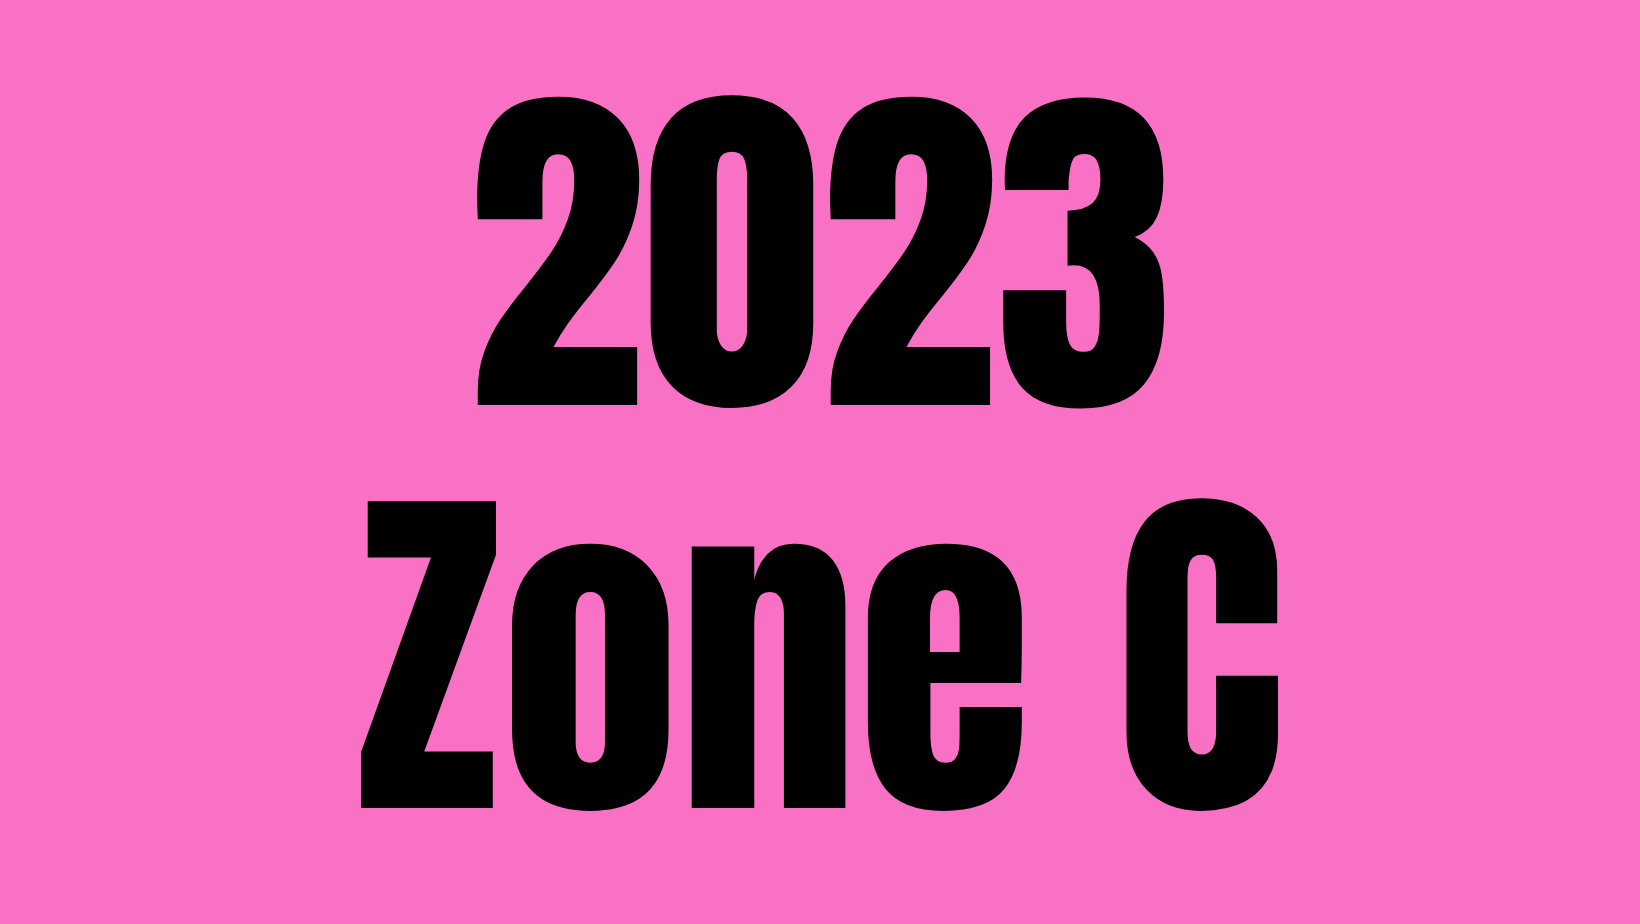 2023 Zone C